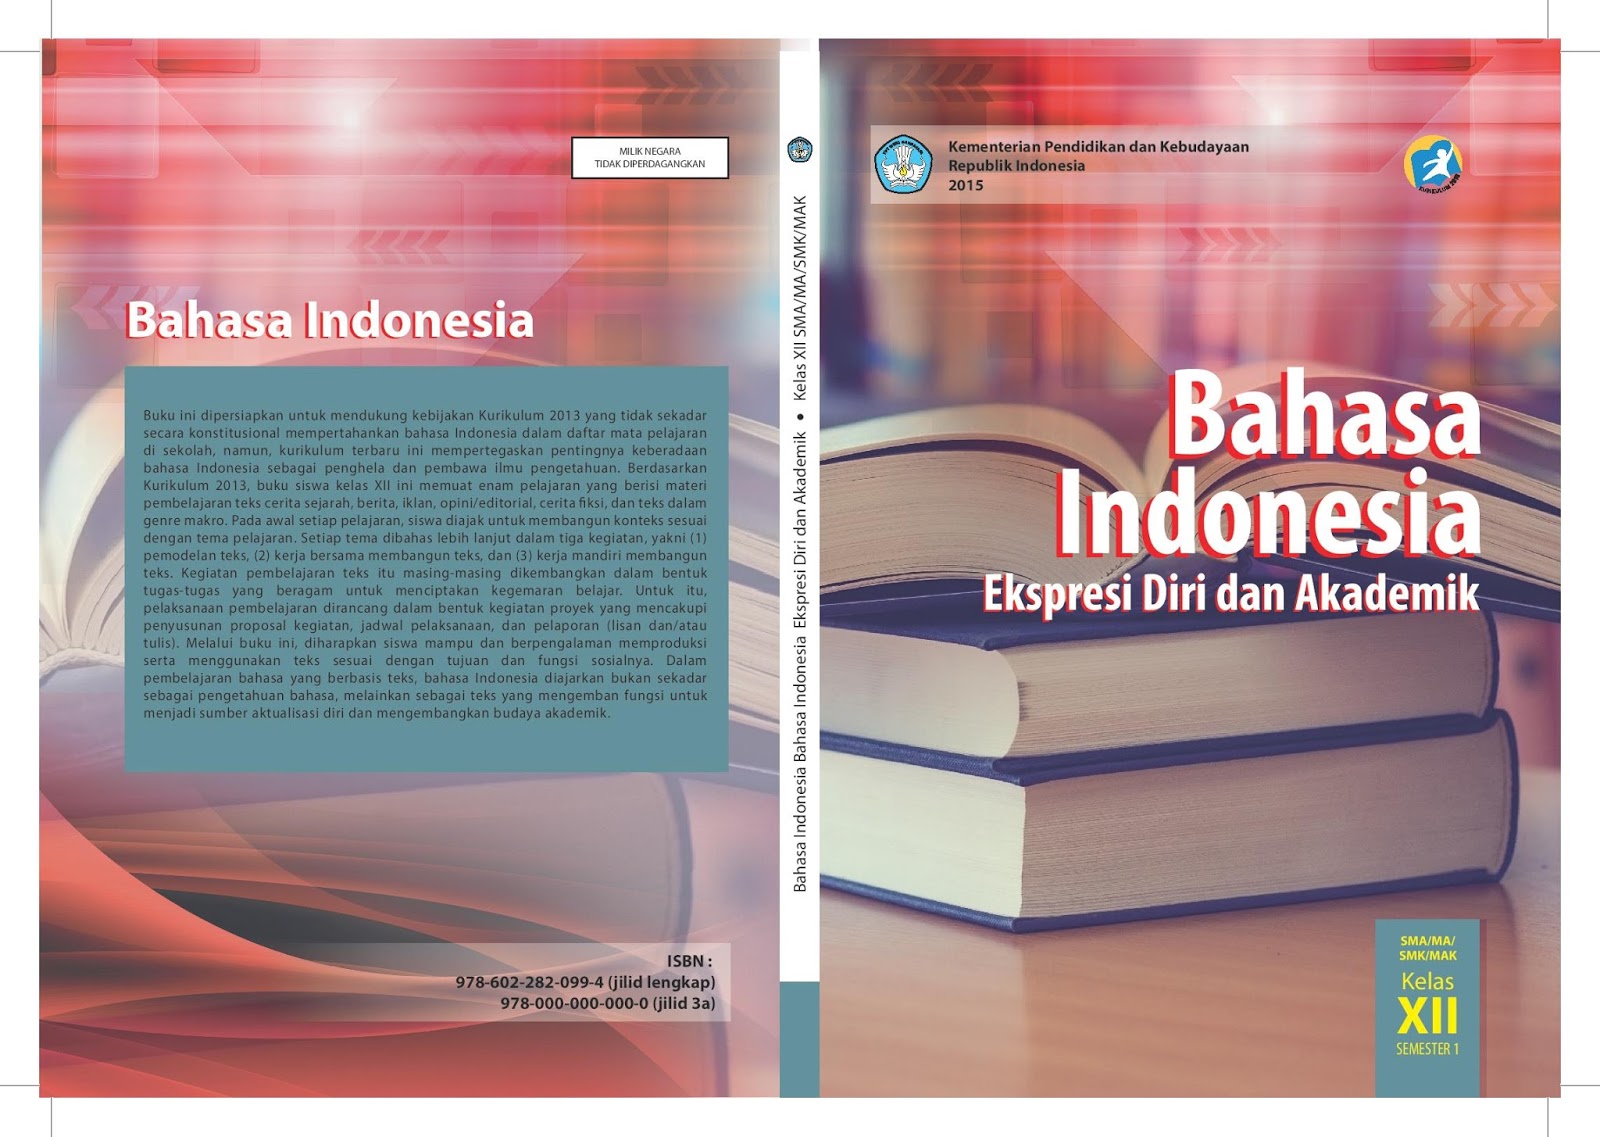 Tugas Bahasa Indonesia Halaman 21 kelas XII buku paket kurikulum 2013 Agan Blog